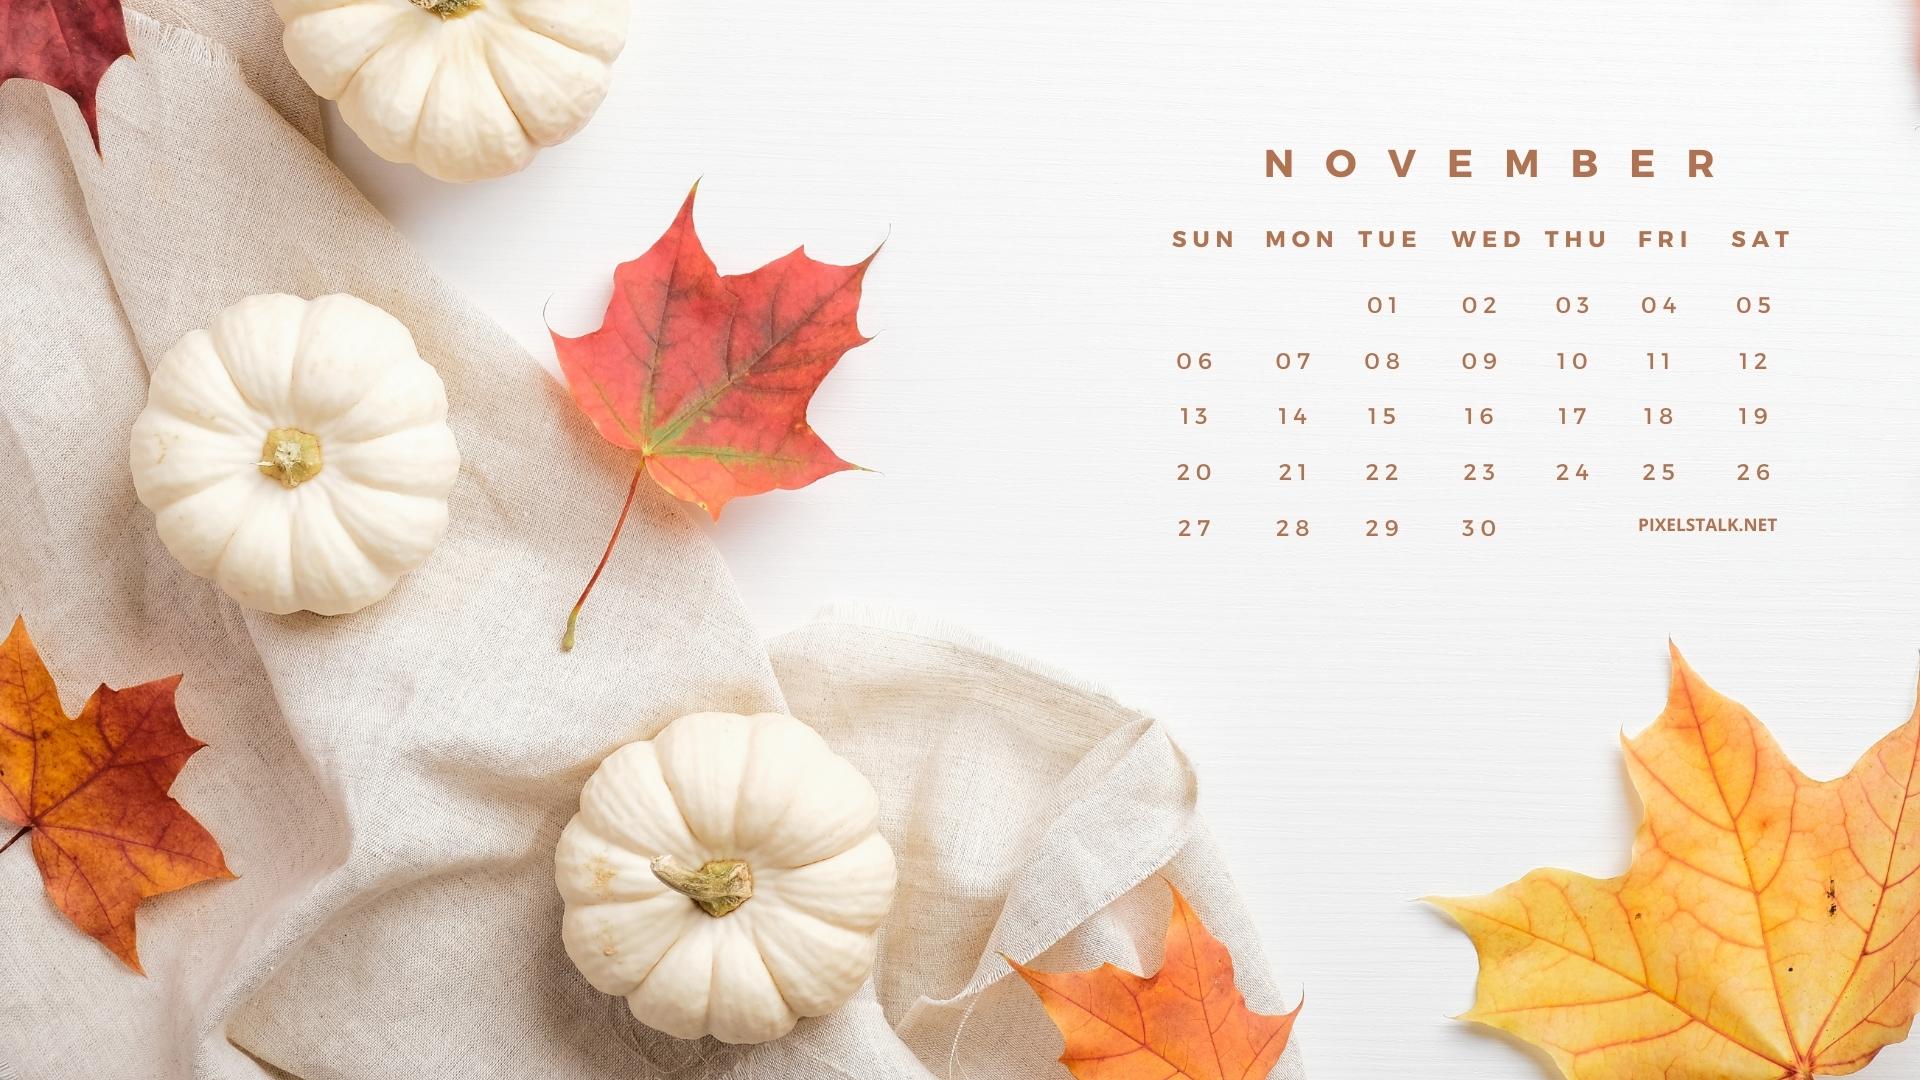 Mùa hè đã đến, bạn có muốn thiết lập lại hình nền lịch tháng 11 mùa HD mang đậm chất mùa thu với những đường cong cuốn hút dành cho màn hình của bạn? Hãy xem ngay những bức tranh tuyệt đẹp trên hình nền lịch tháng 11 để tự thỏa mãn về nhu cầu trang trí cho màn hình của mình!